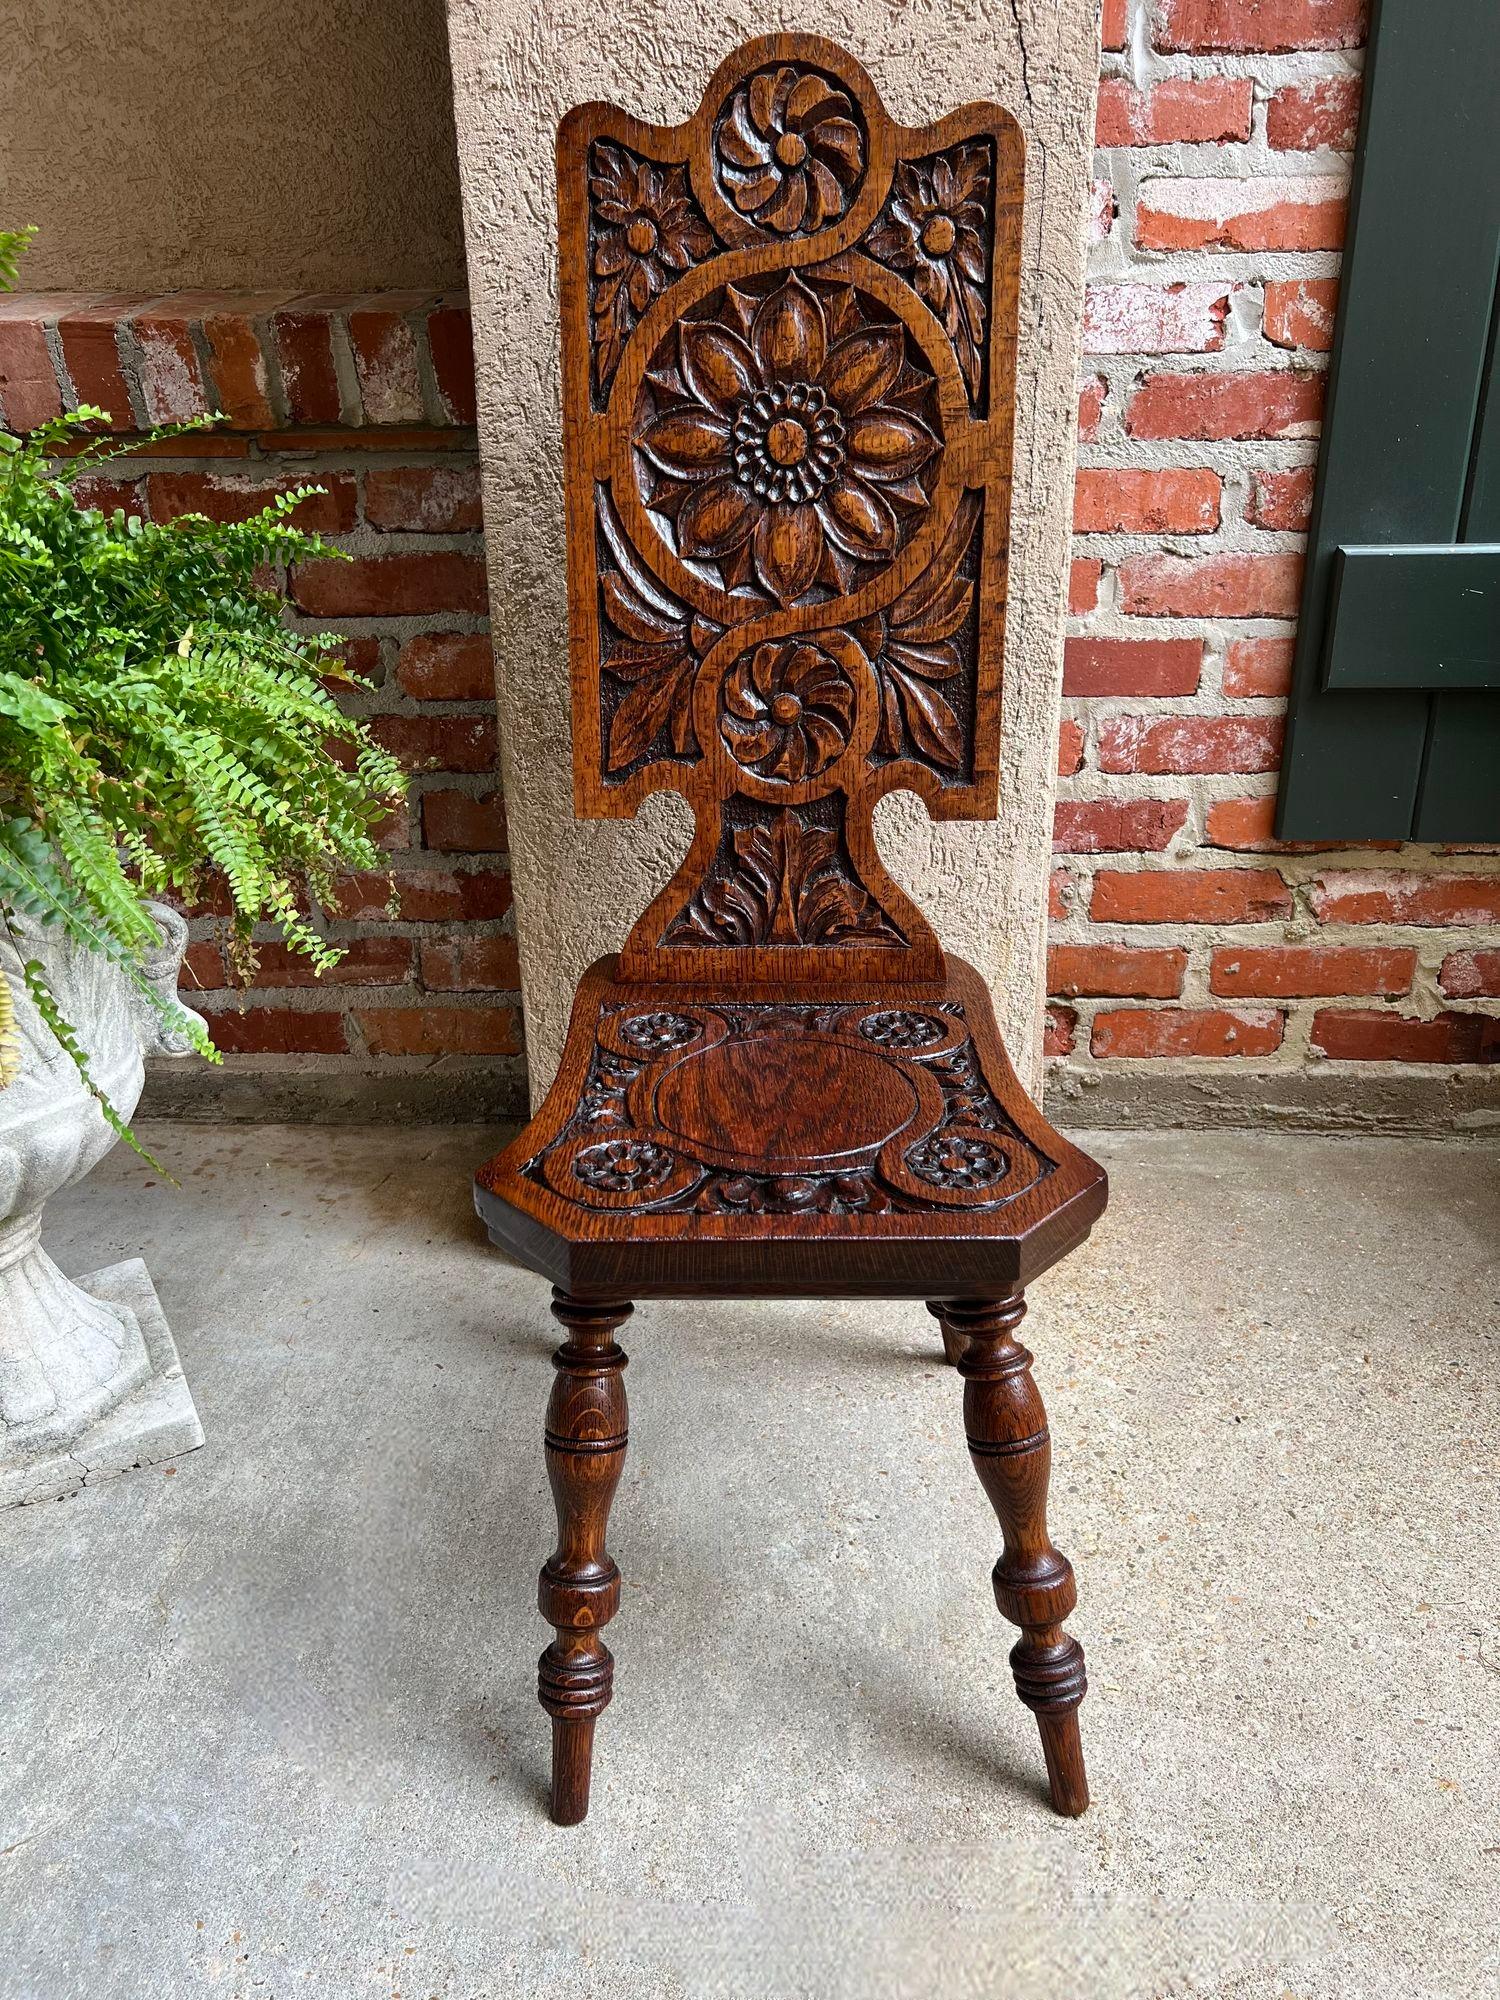 Ancienne chaise à roulettes anglaise en chêne sculpté pour cheminée d'entrée et d'âtre.

En provenance directe d'Angleterre, une belle chaise ancienne de type 